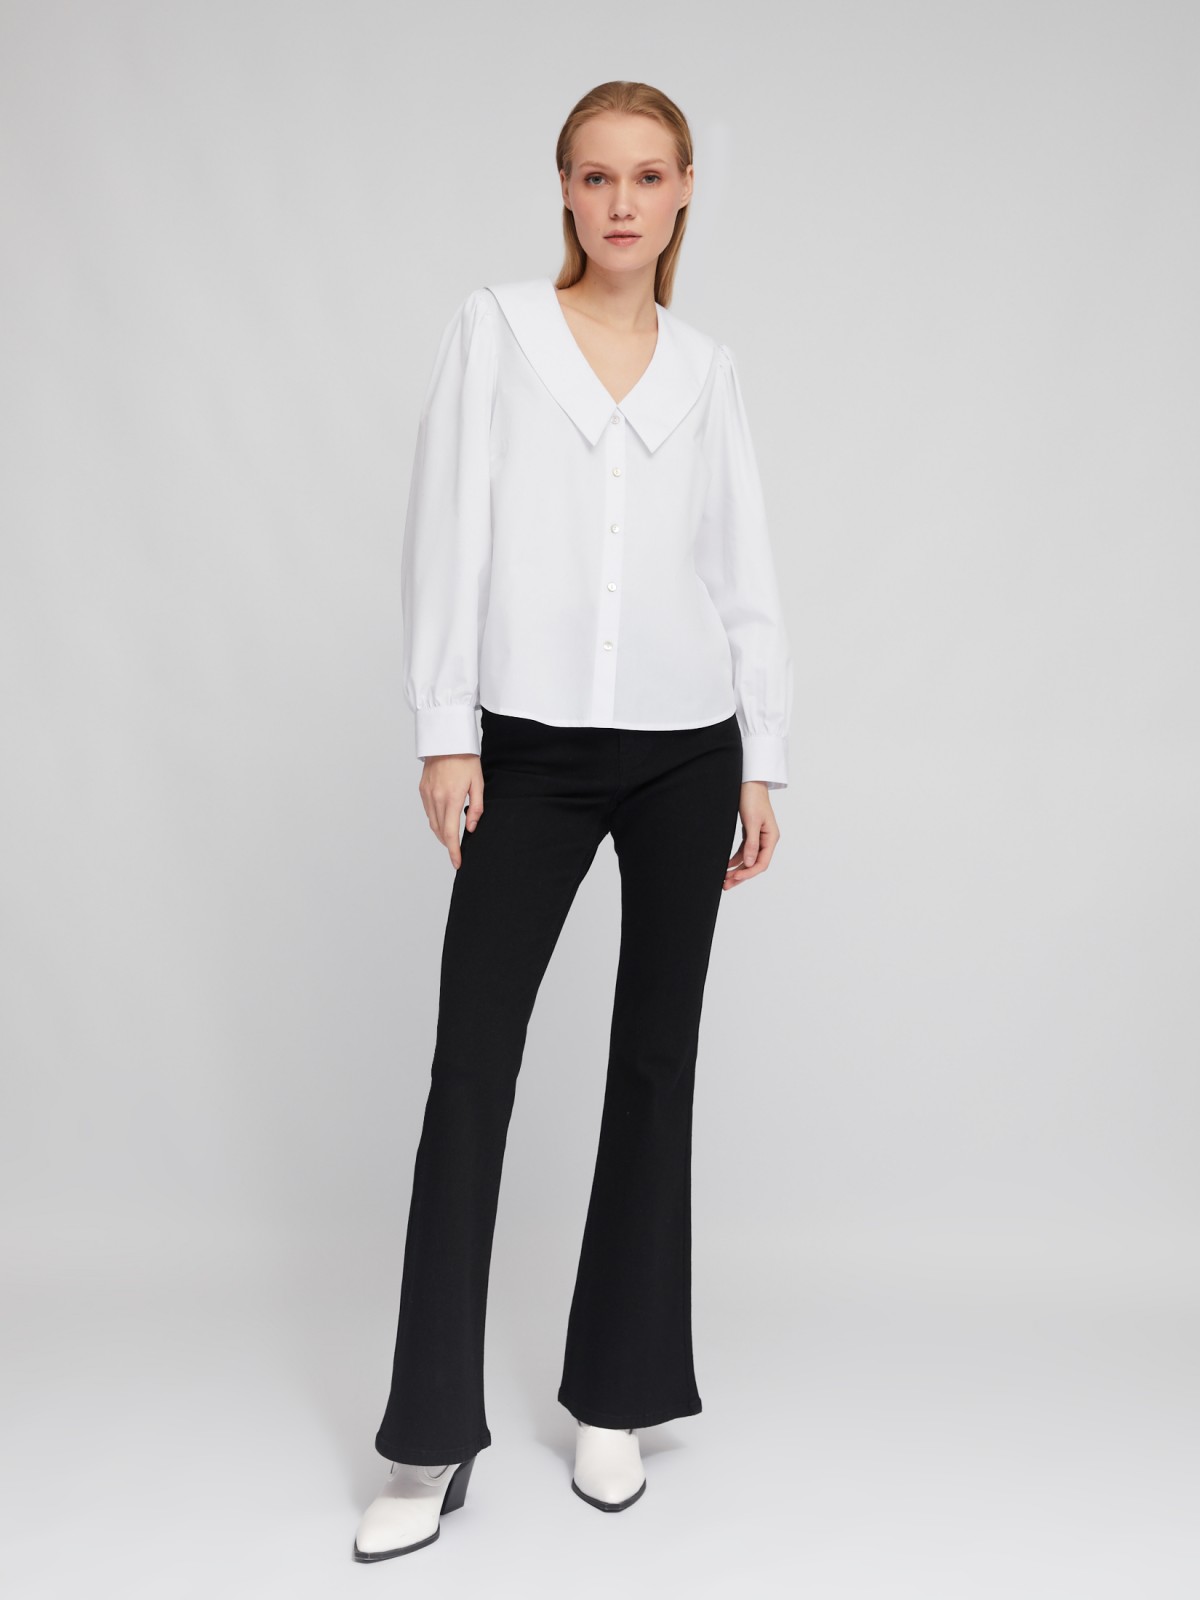 Блузка-рубашка с акцентным воротником и объёмными рукавами zolla 02411117Y593, цвет белый, размер XS - фото 2